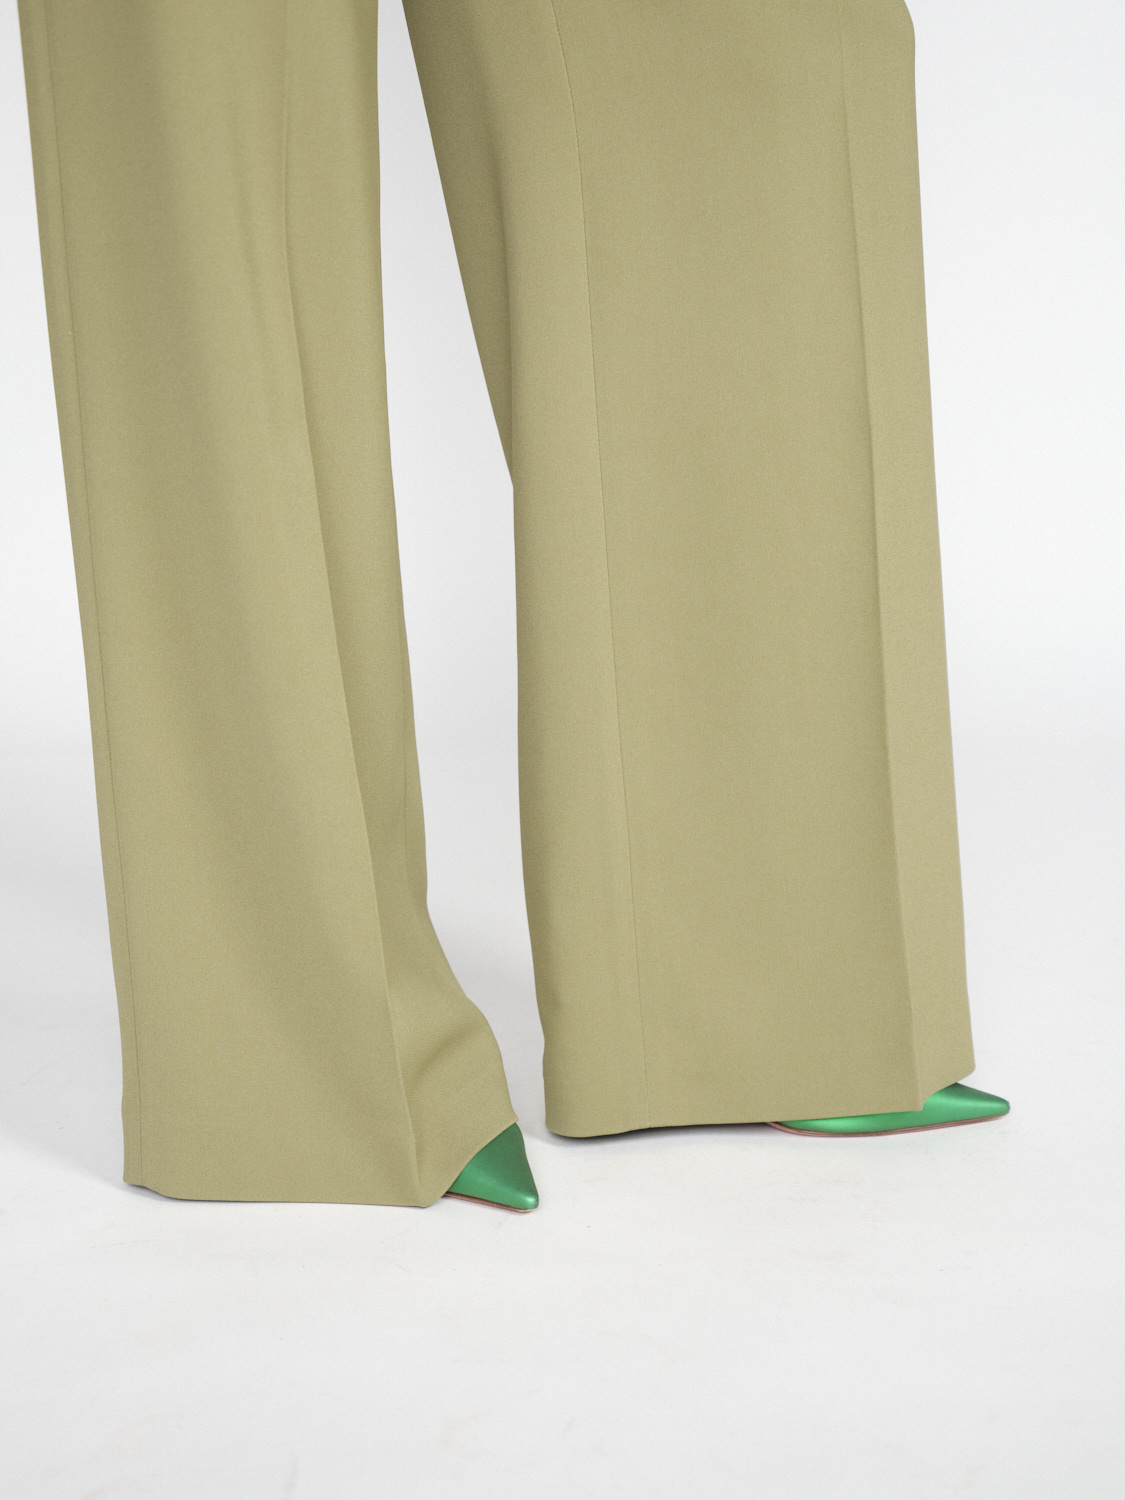 Joseph Alane Trousers - Pantalon large en tissu high-tech khaki 34